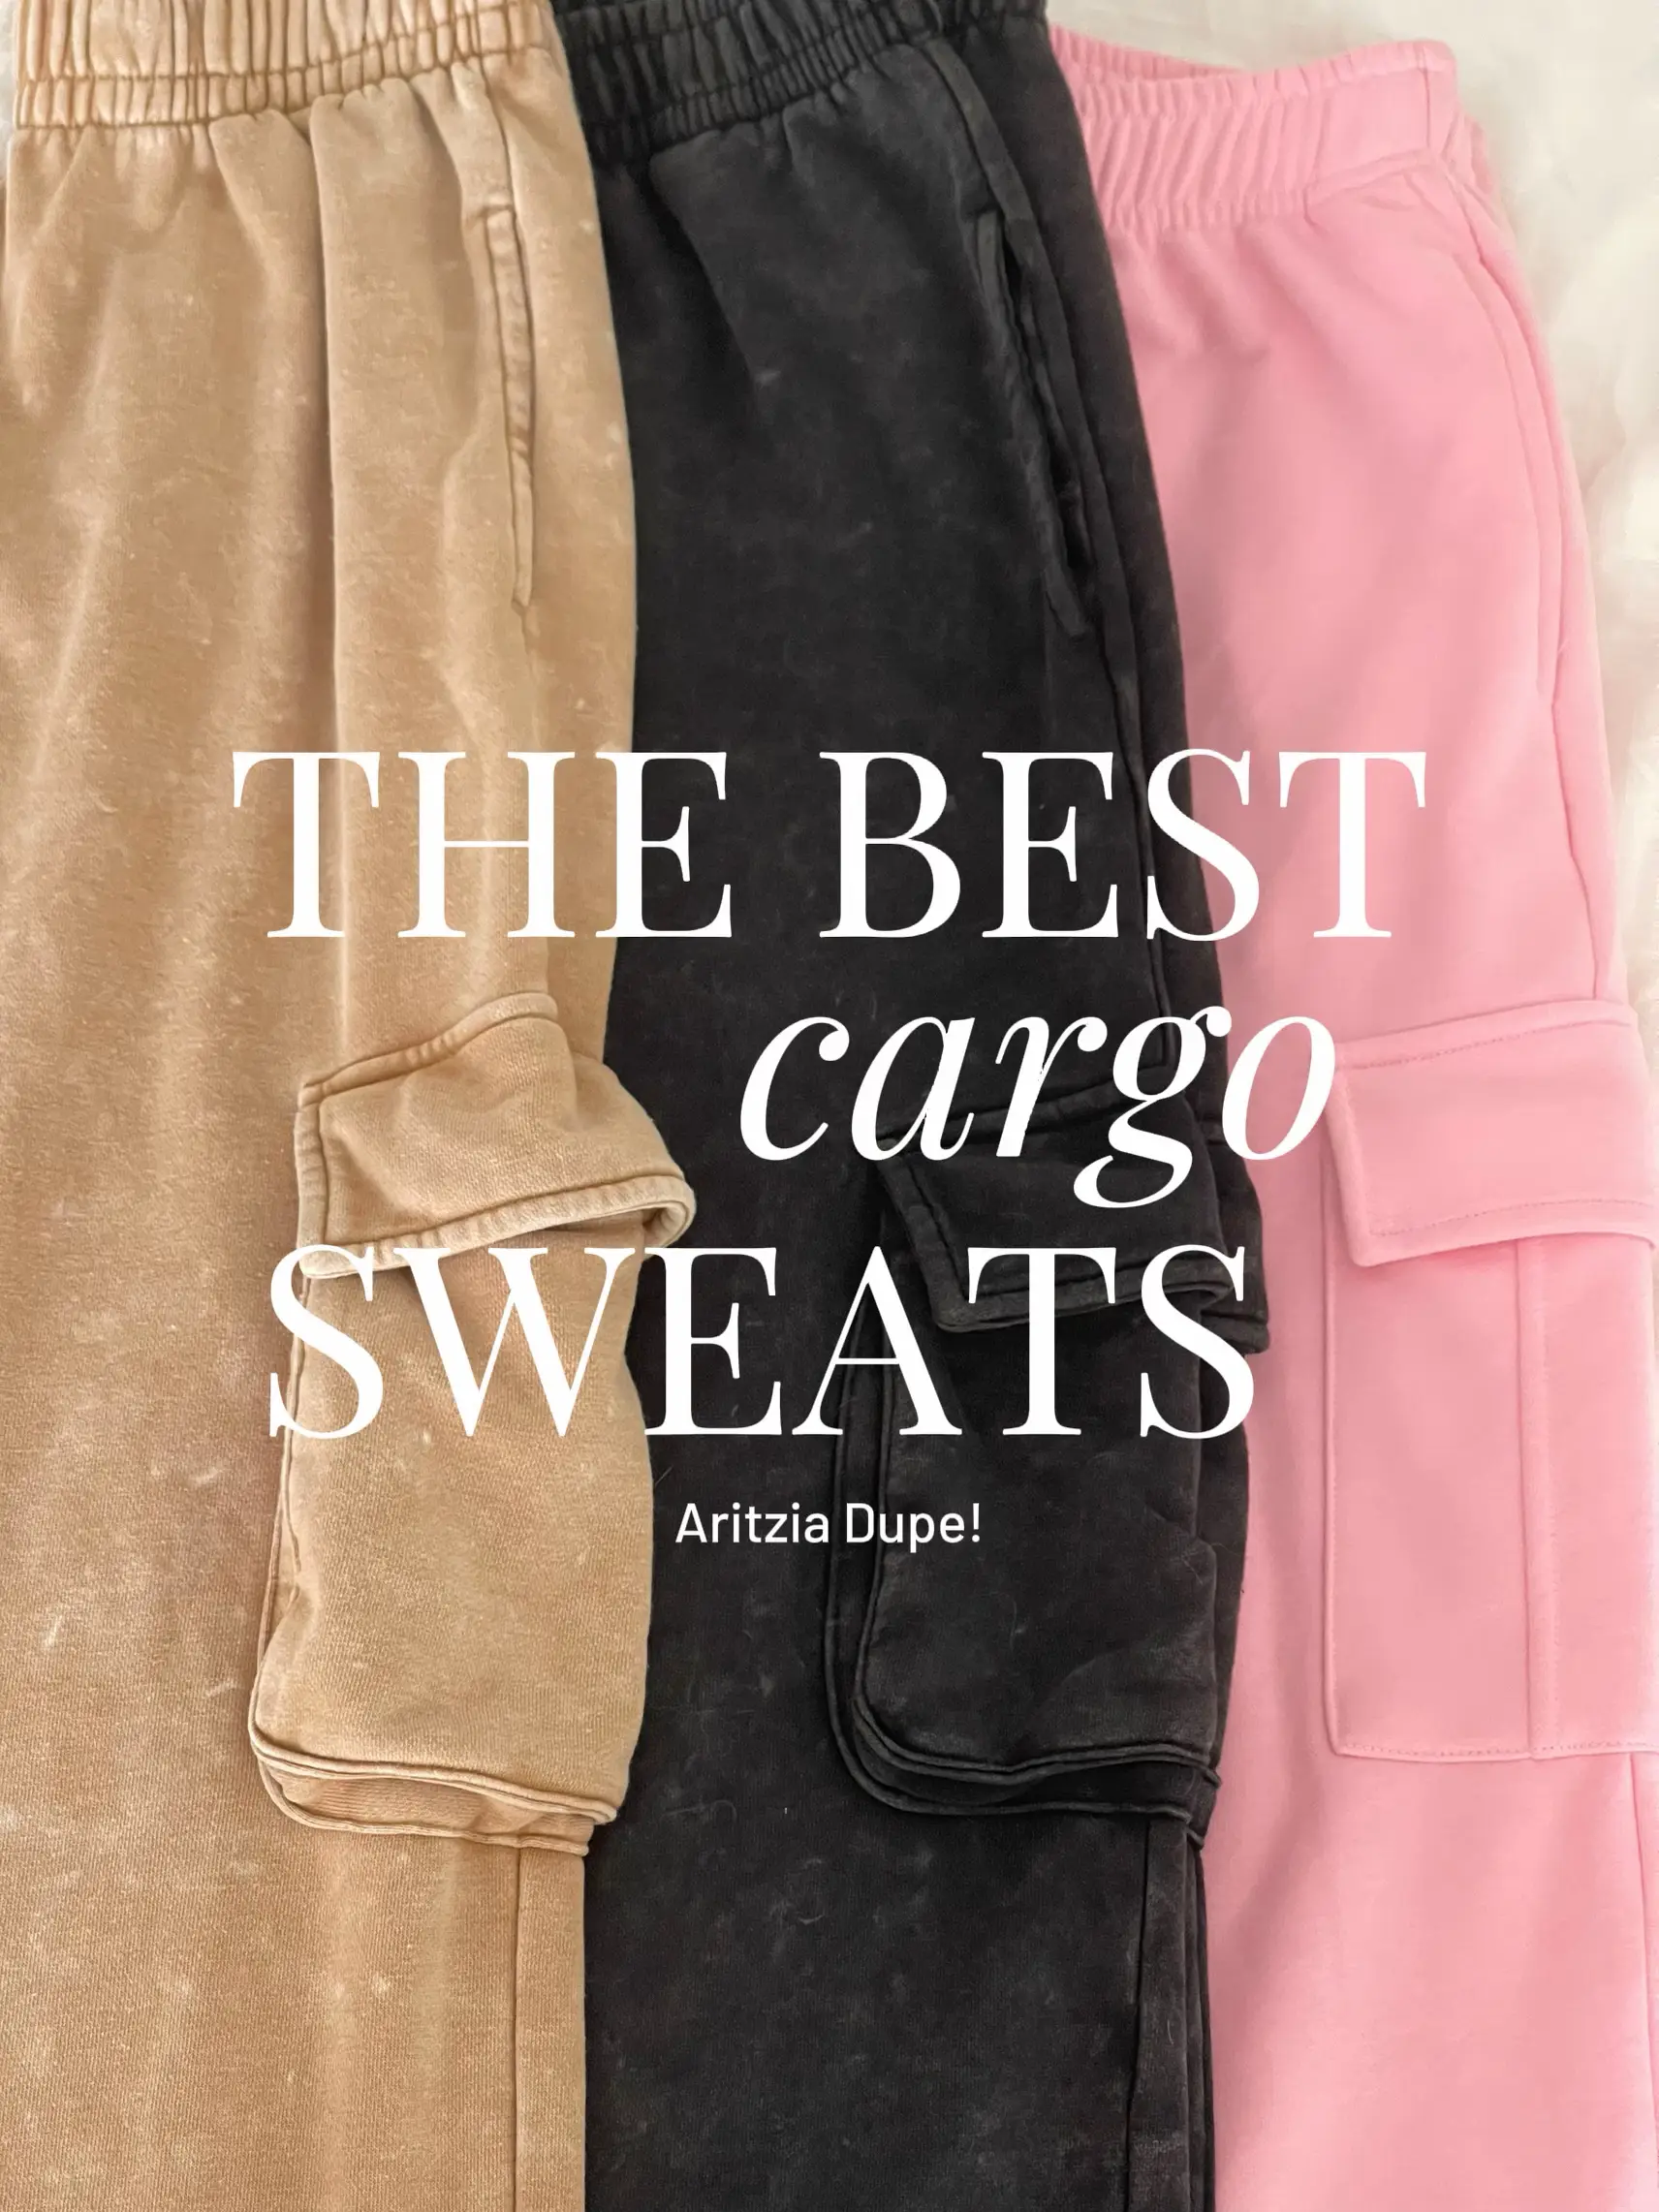 Mega Cargo Sweatpants Sizing Help! : r/Aritzia